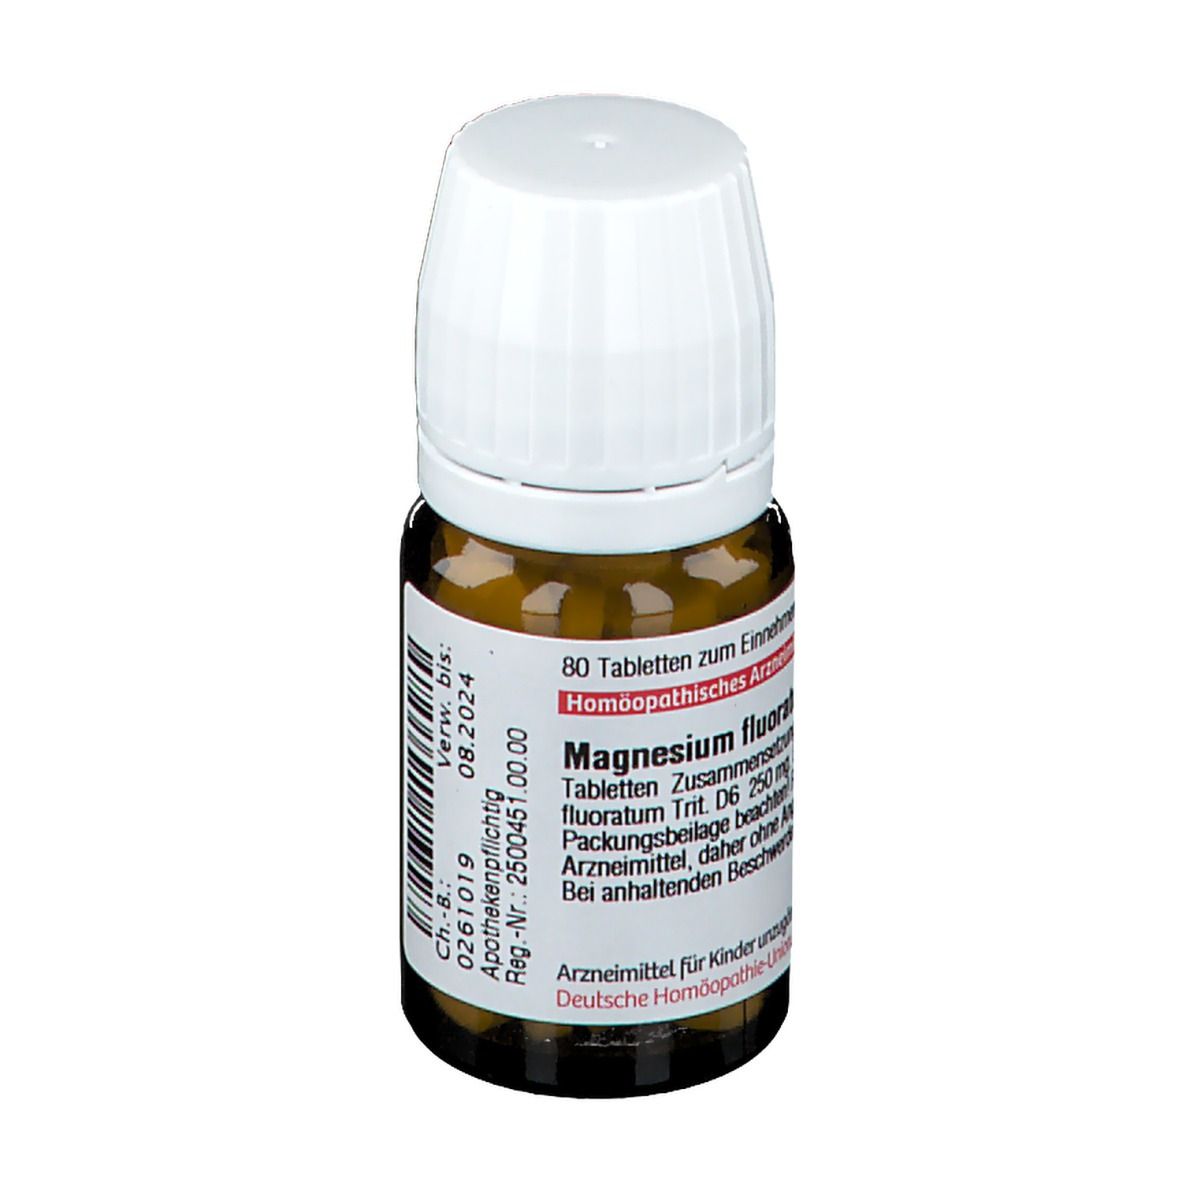 DHU Magnesium Fluoratum D6